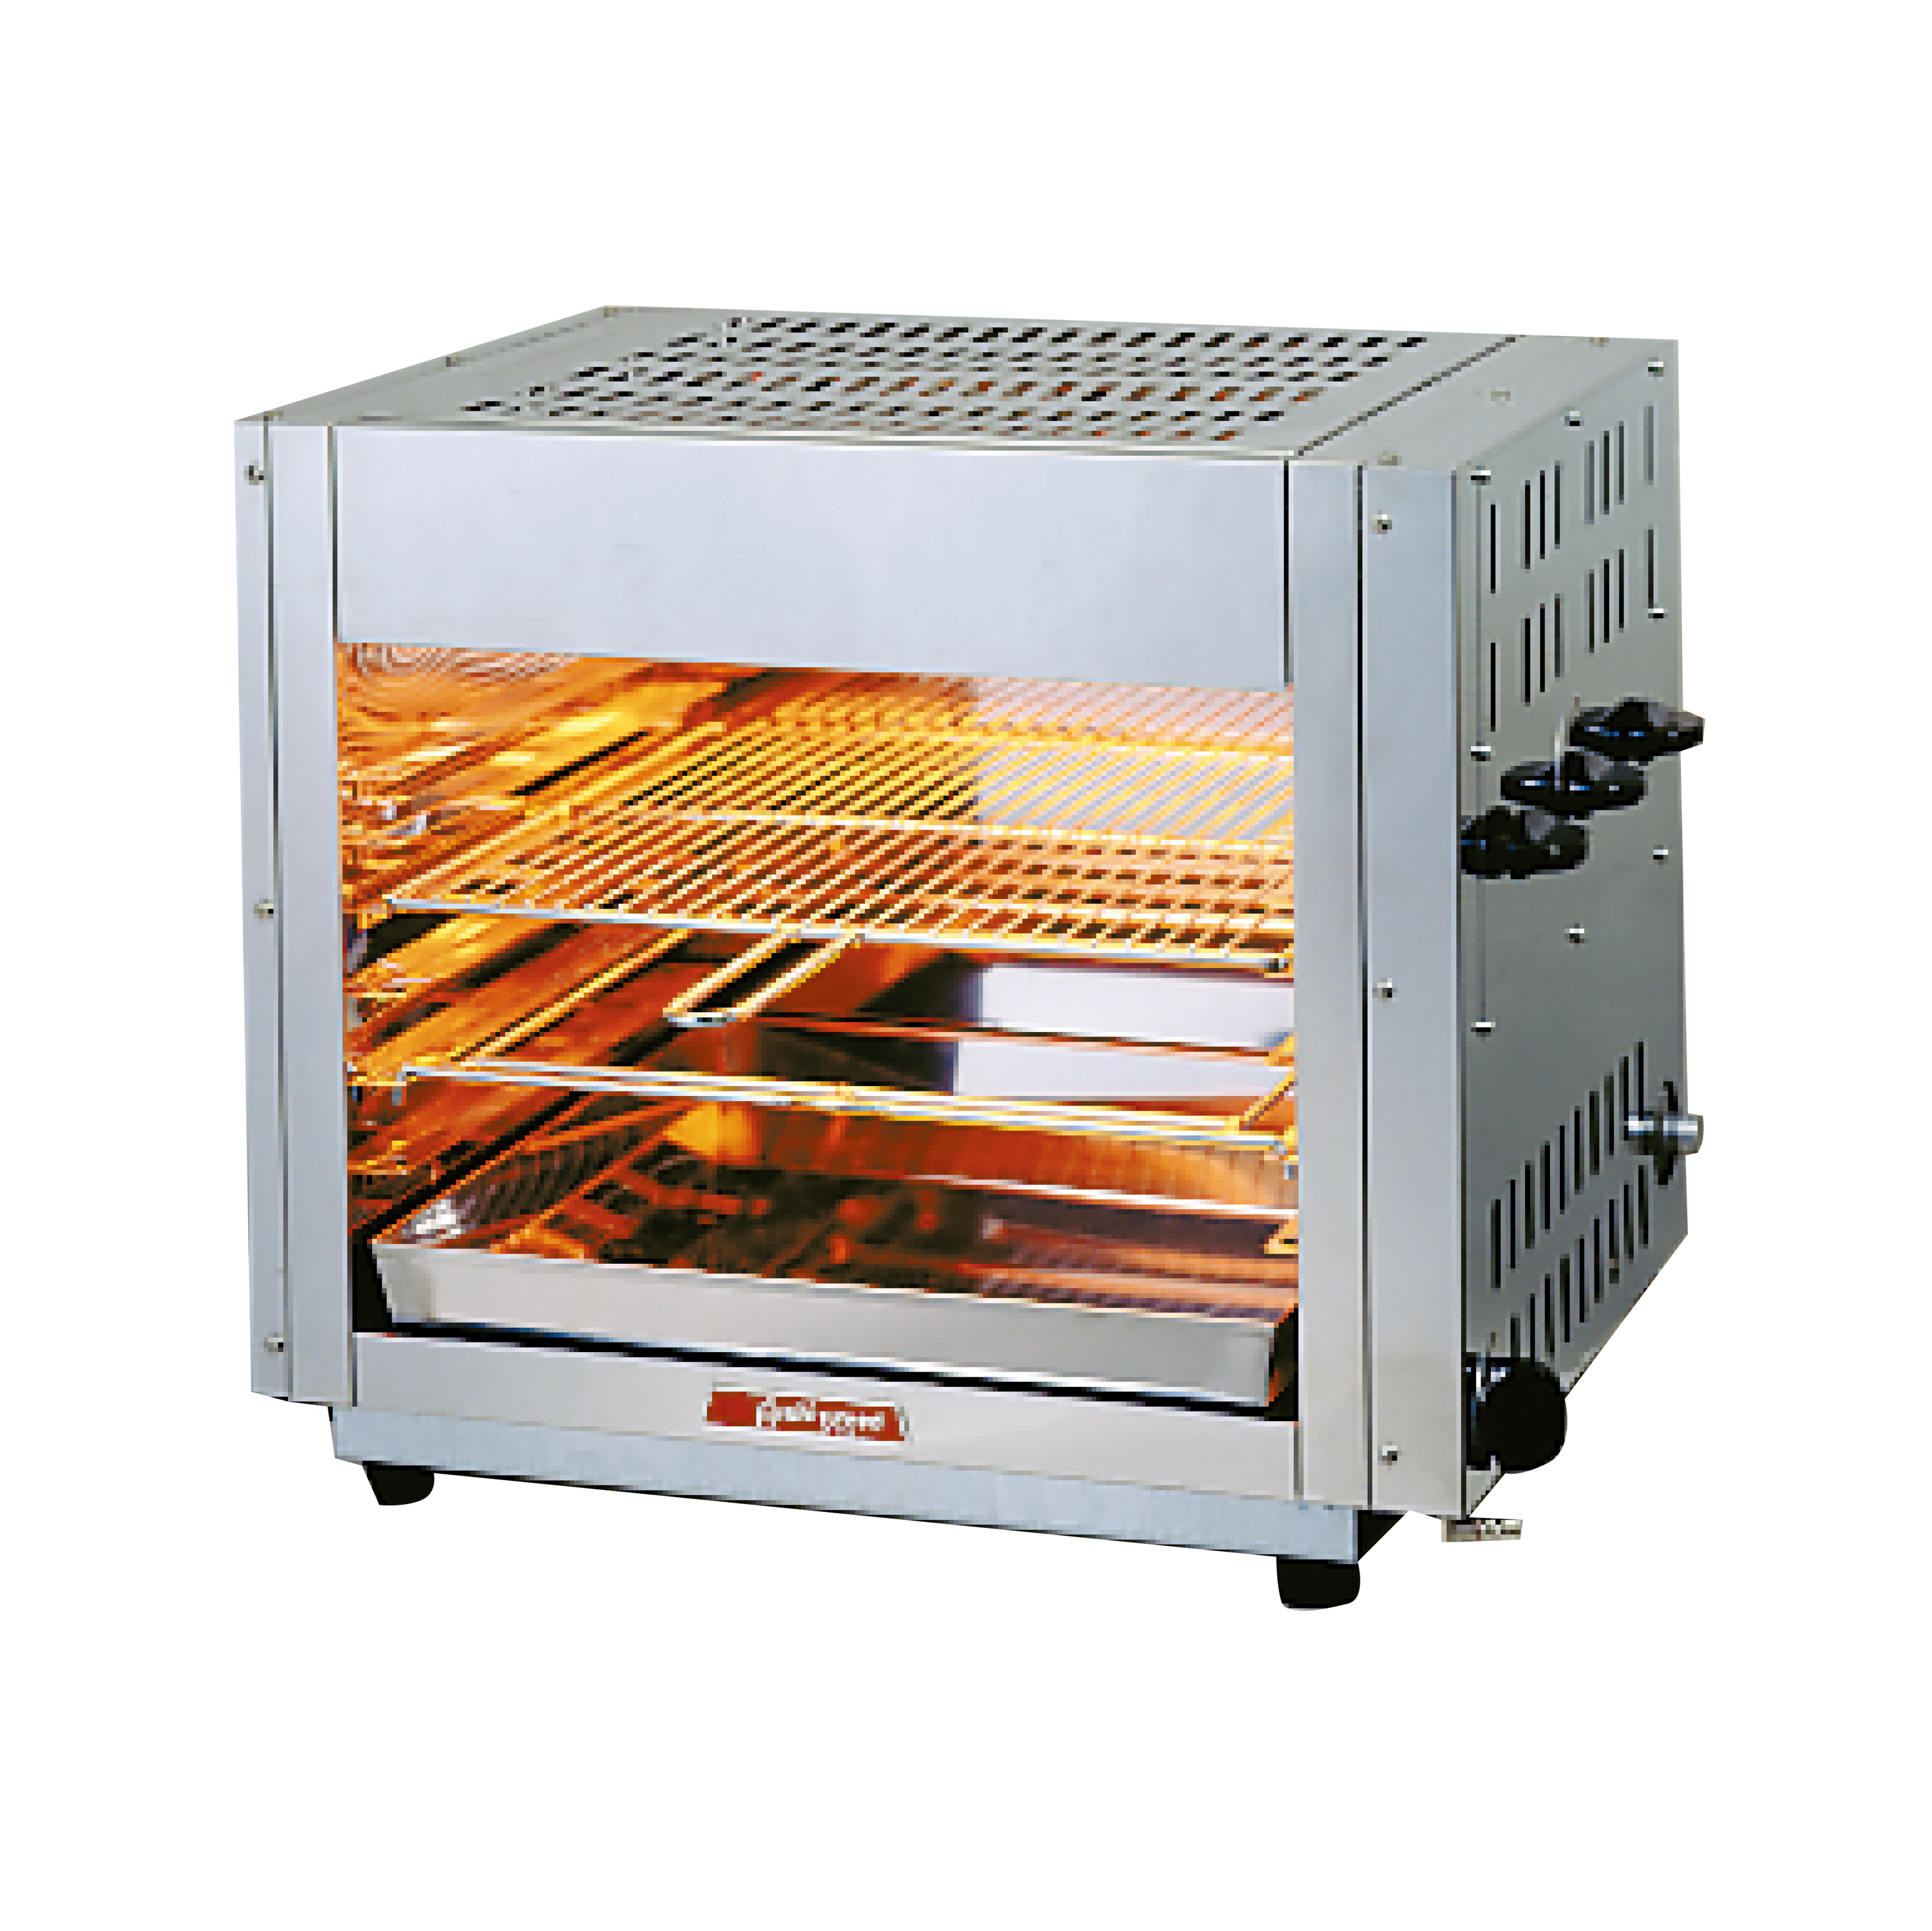 グリラー 赤外線上火式 グリルクイン アサヒ SG-900H LP(プロパンガス) (業務用)(送料無料) 幅975×奥行430×高さ515 - 4